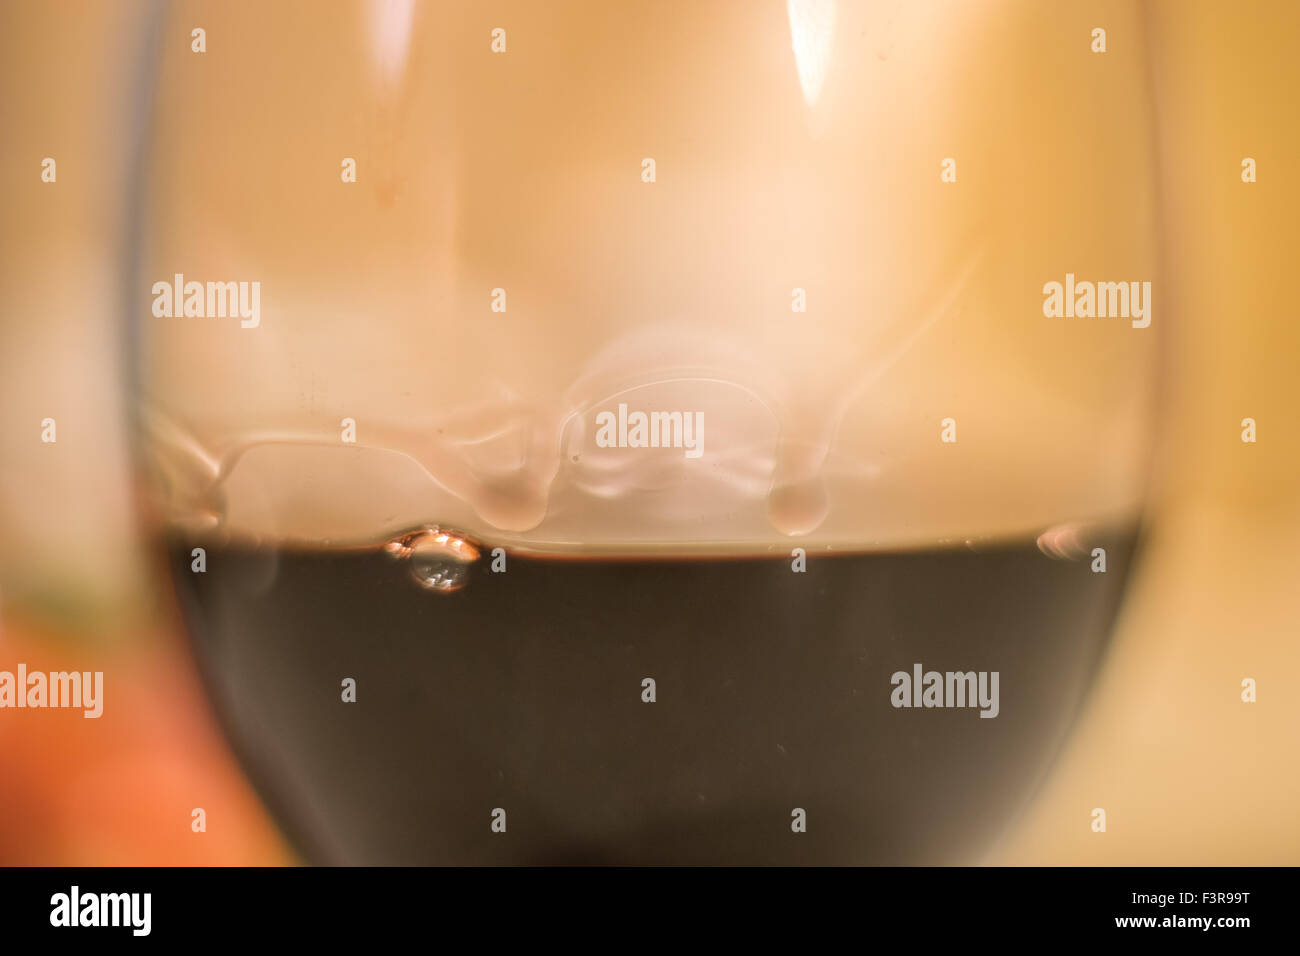 Copa de Vino con gotas de agua formadas por la tensión superficial del alcohol Foto de stock